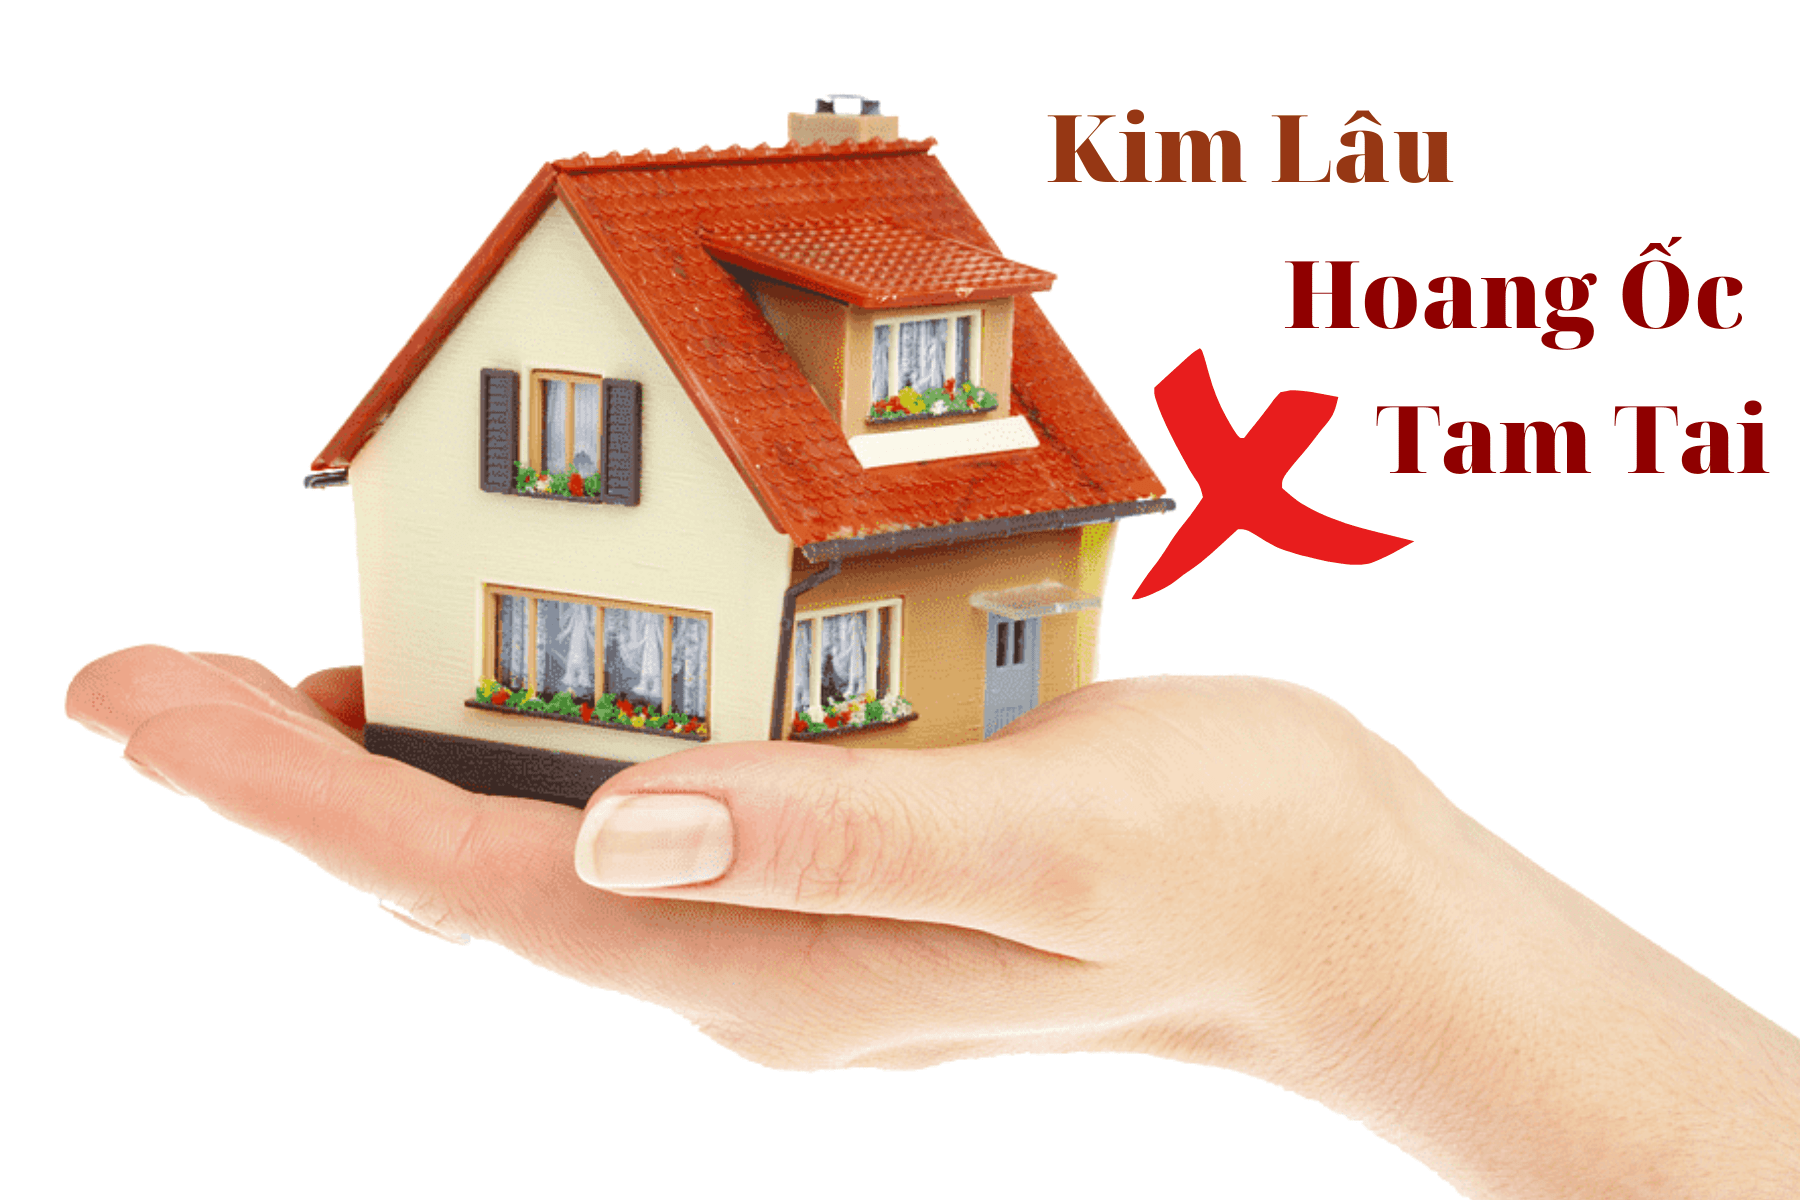 Người tuổi Kim Lâu, Hoang Ốc, Tam Tai không nên xây nhà